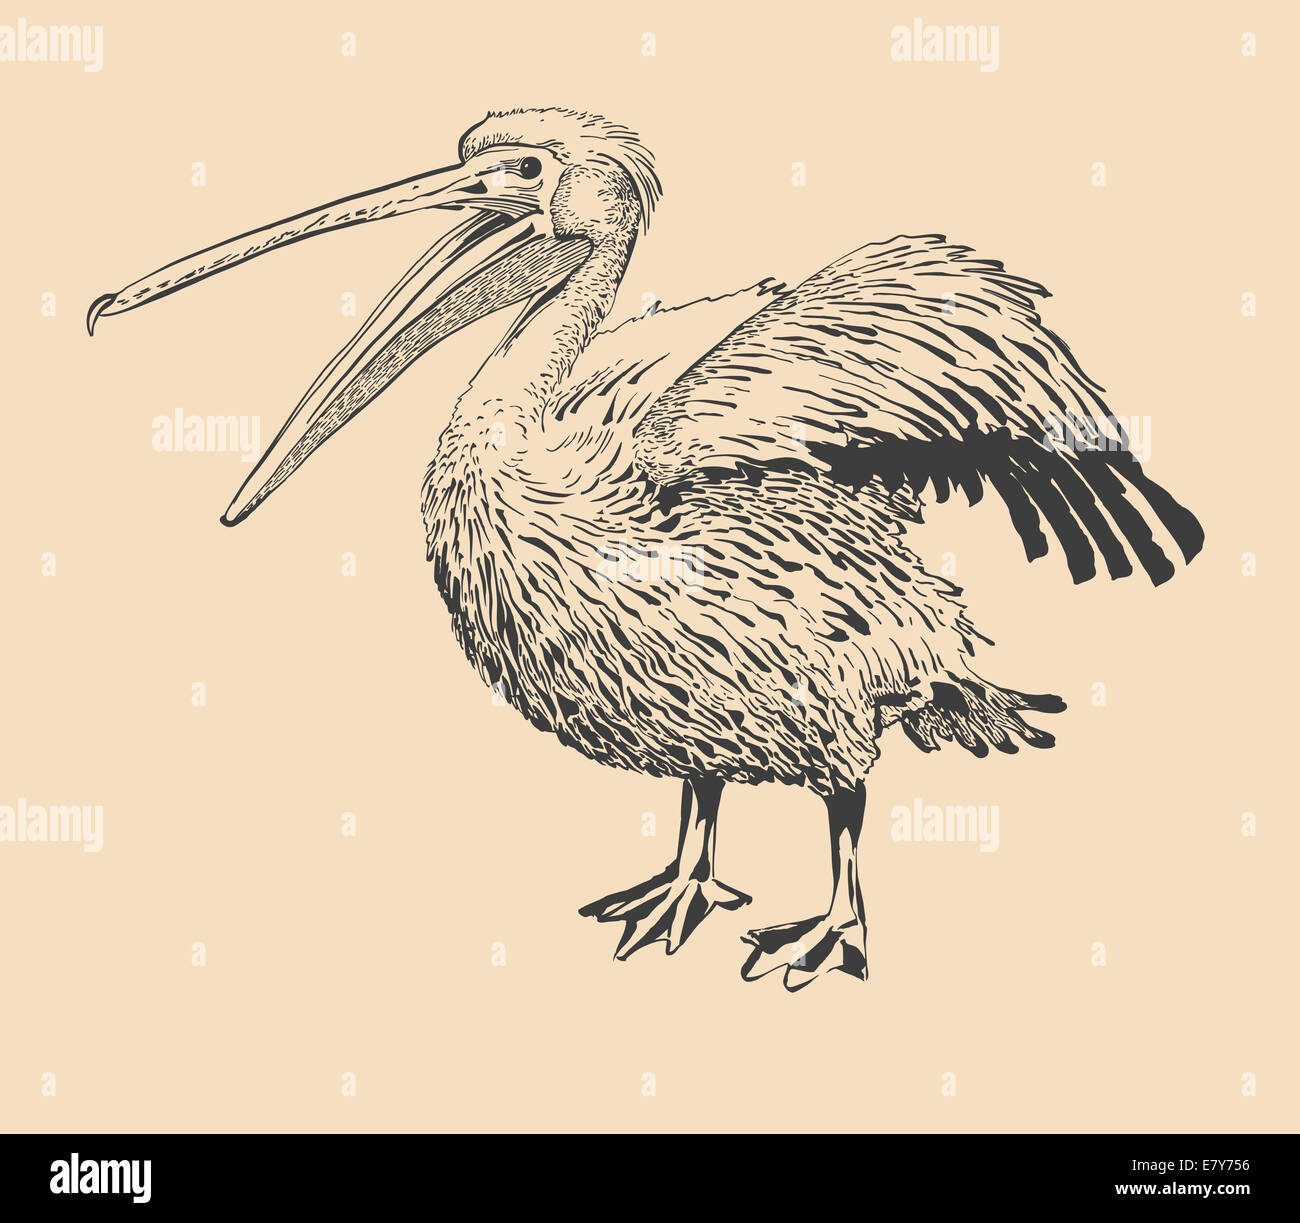 Dessin à l'encre d'origine de Pelican avec bec ouvert Banque D'Images